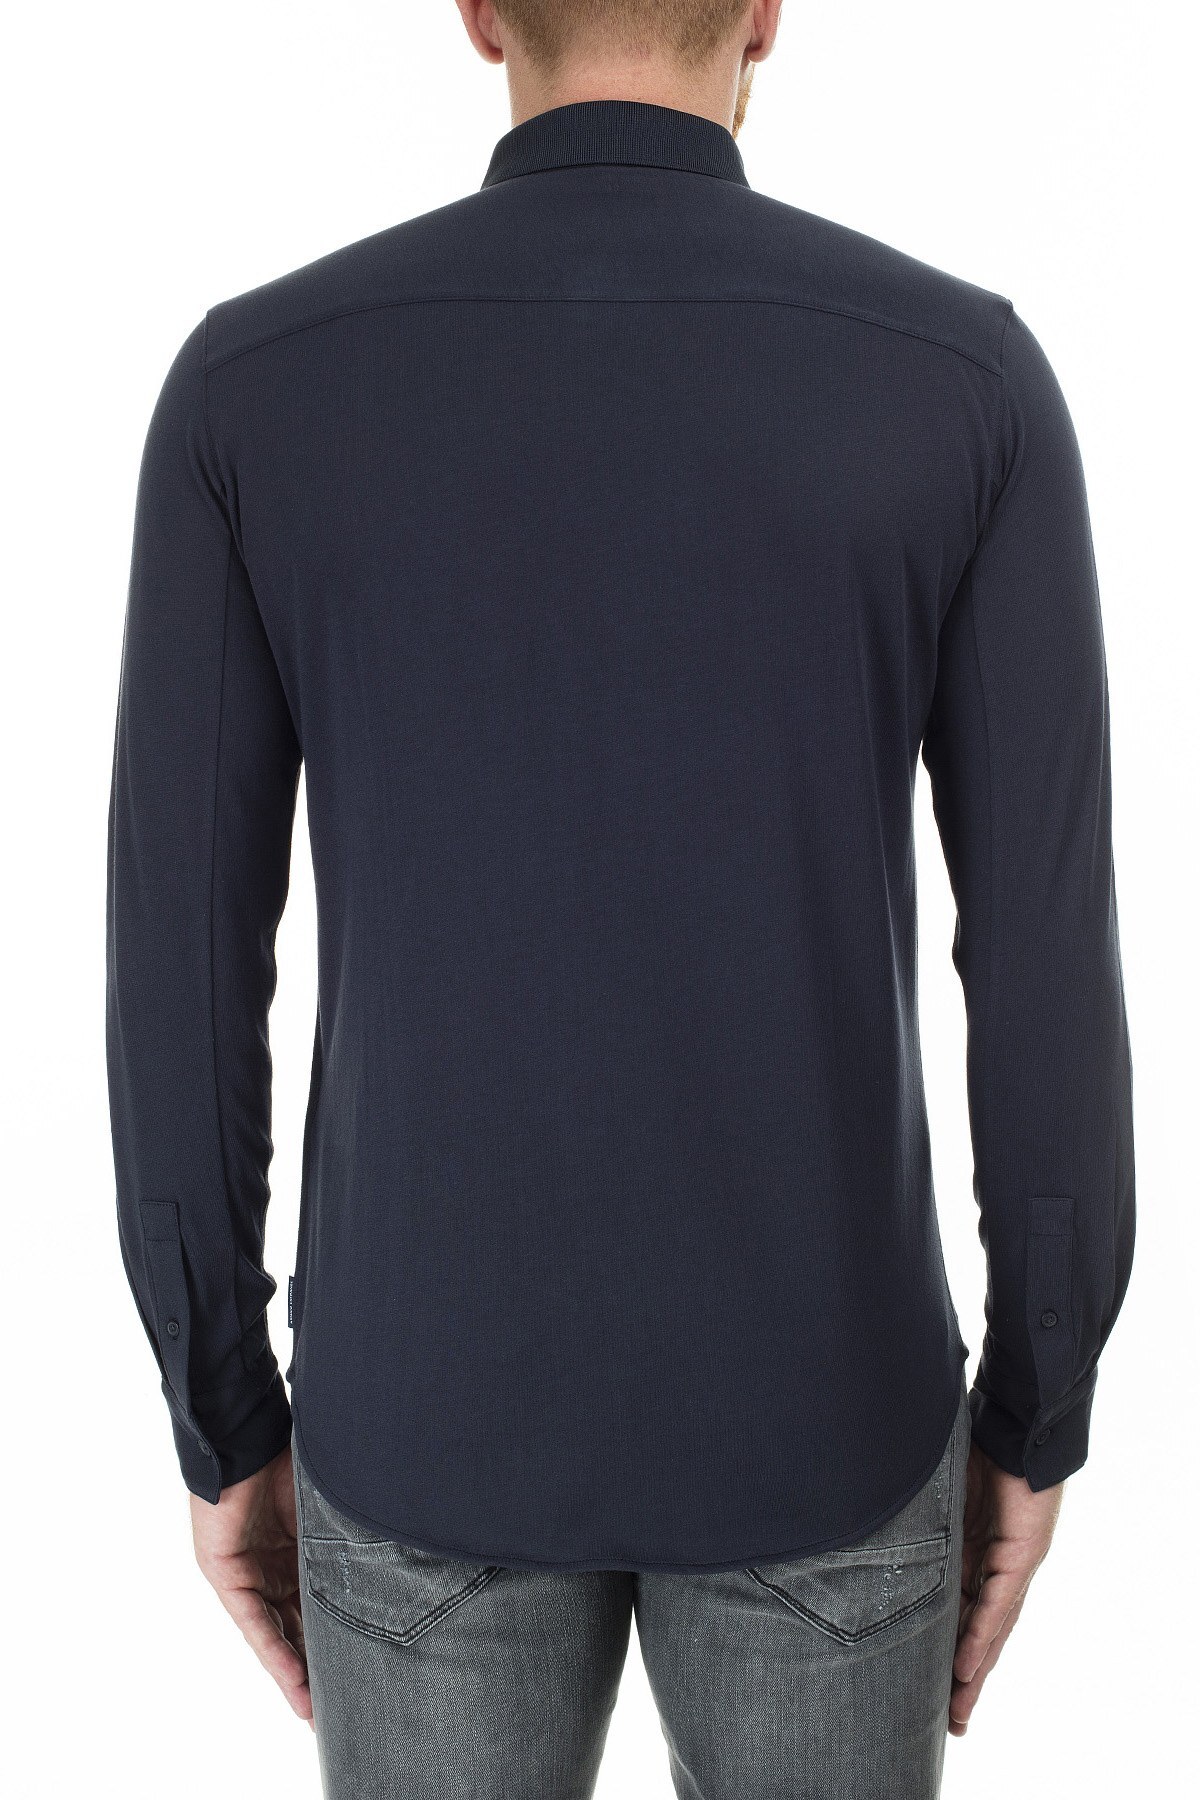 Armani Exchange Logo Baskılı Şerit Regular Fit Uzun Kollu Erkek Gömlek 3HZCGA ZJH4Z 1510 LACİVERT